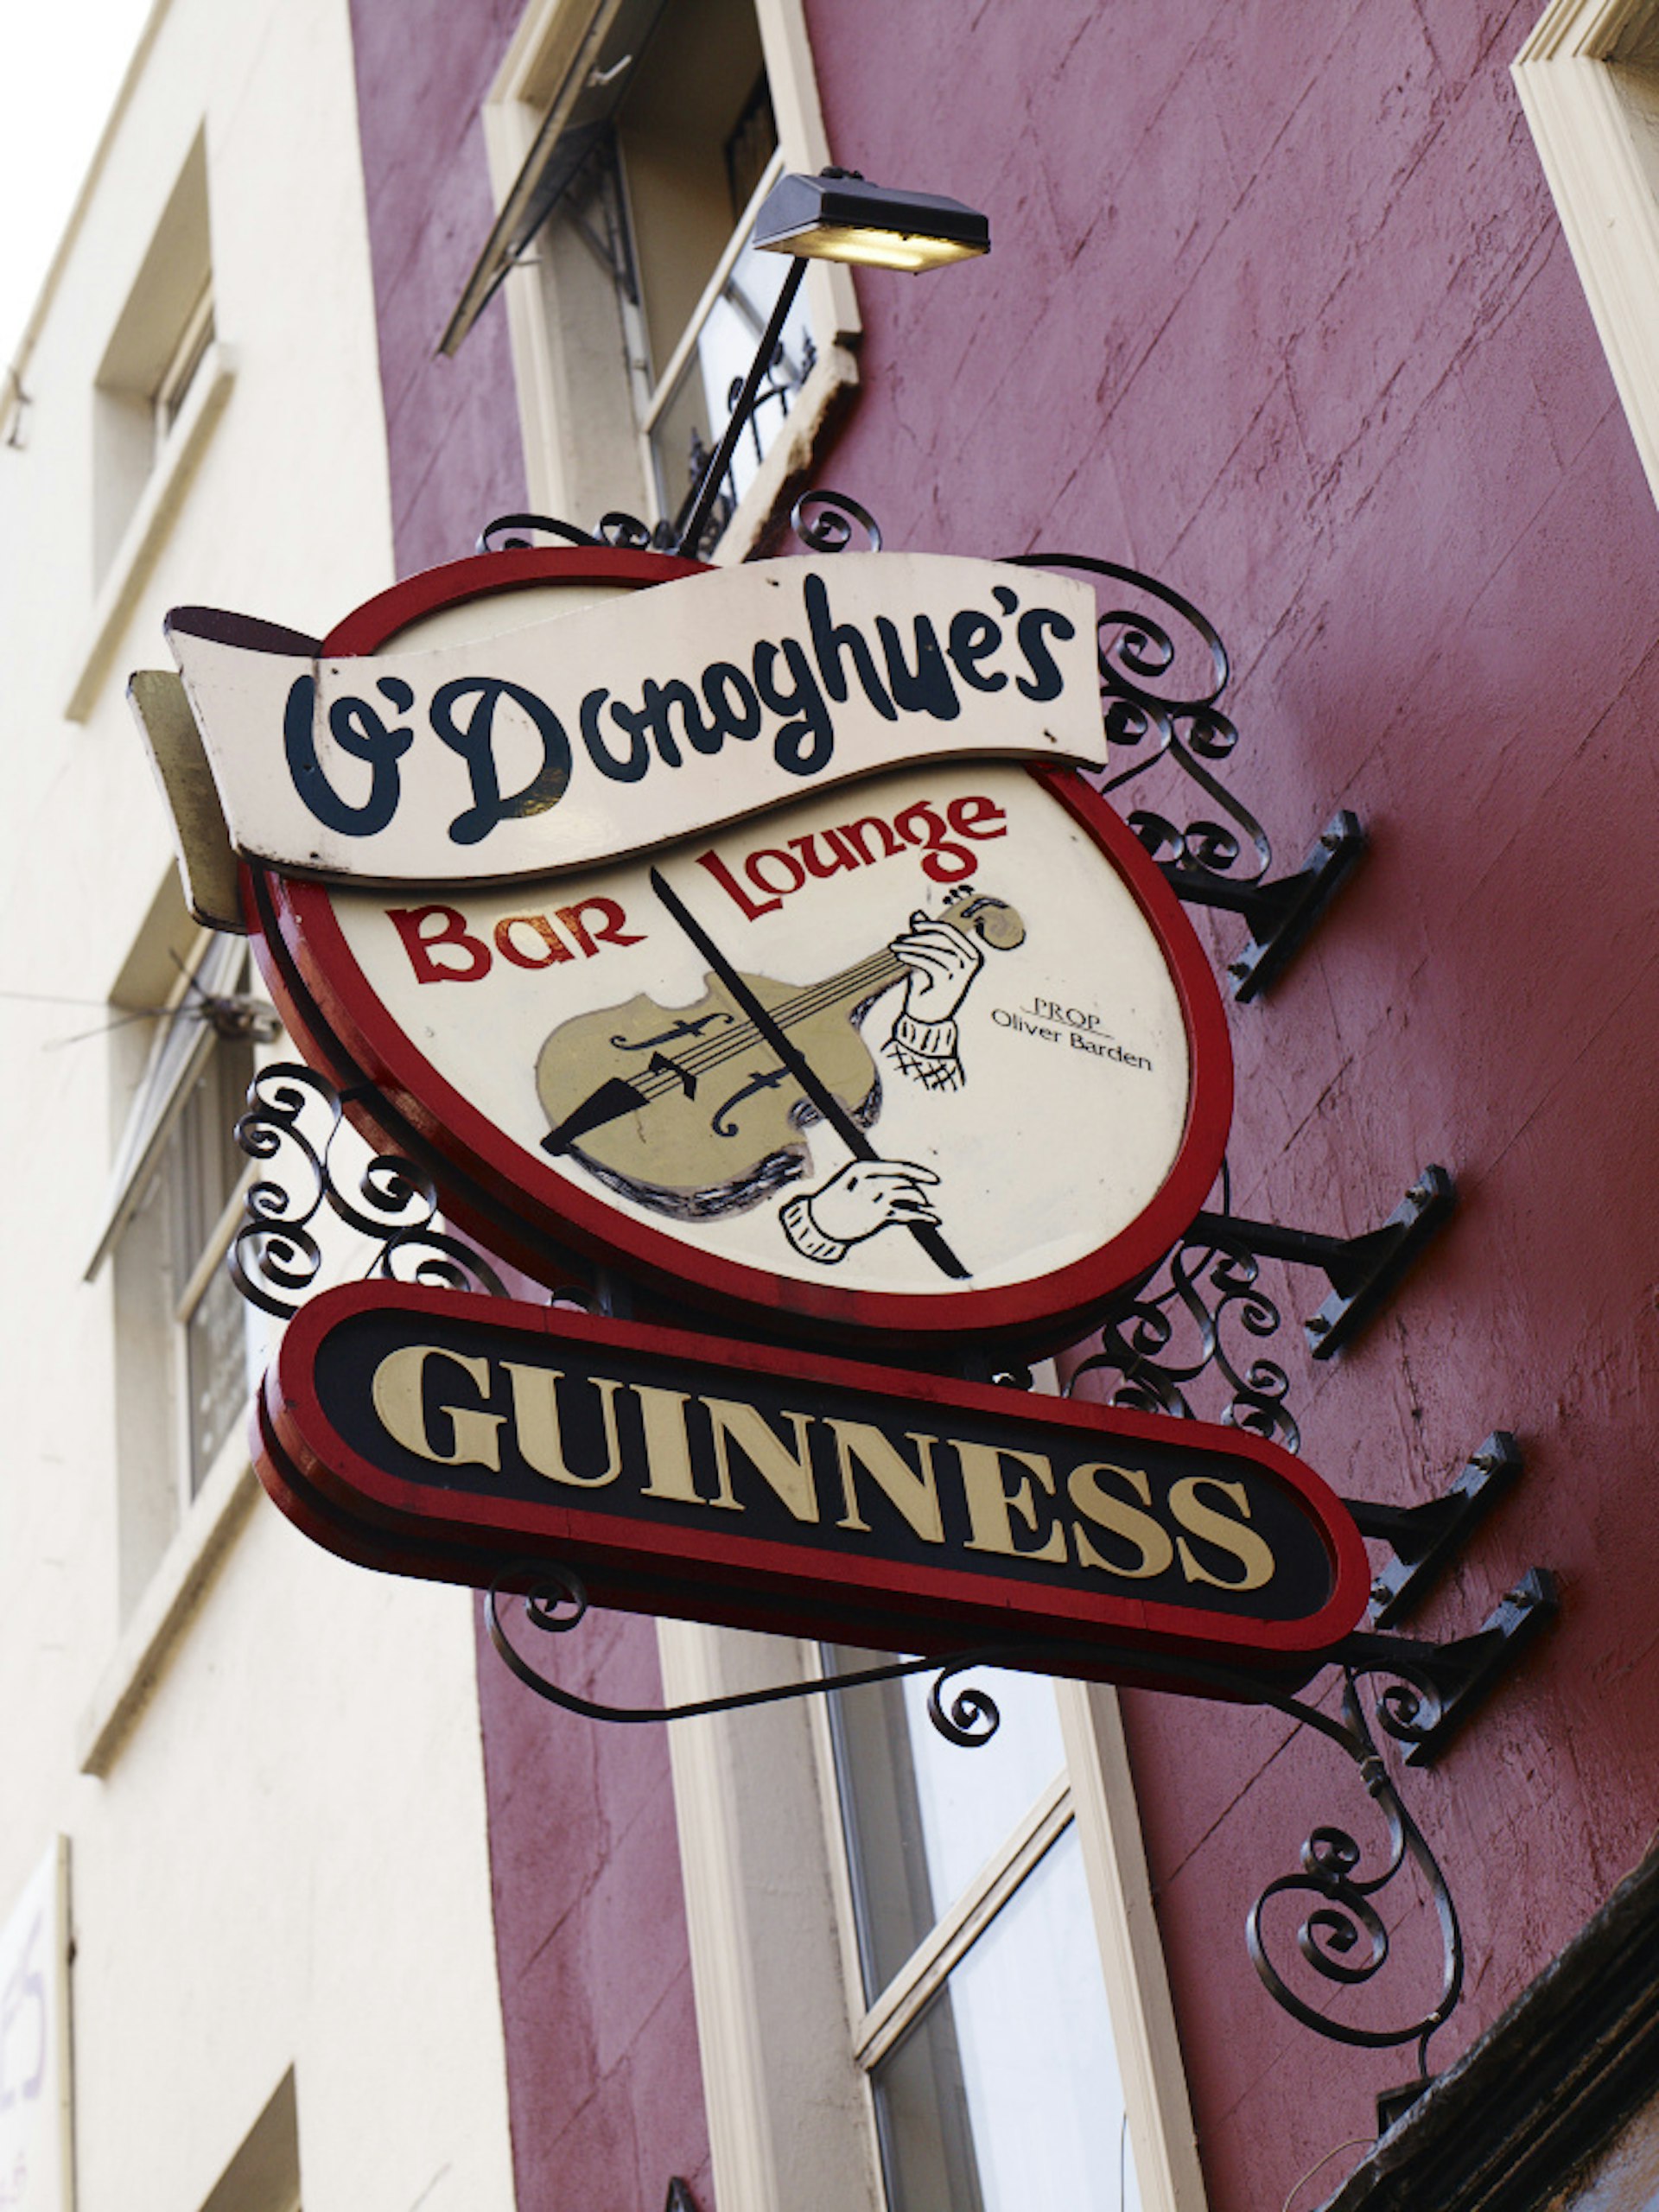 Sign outside O’Donoghue’s pub.